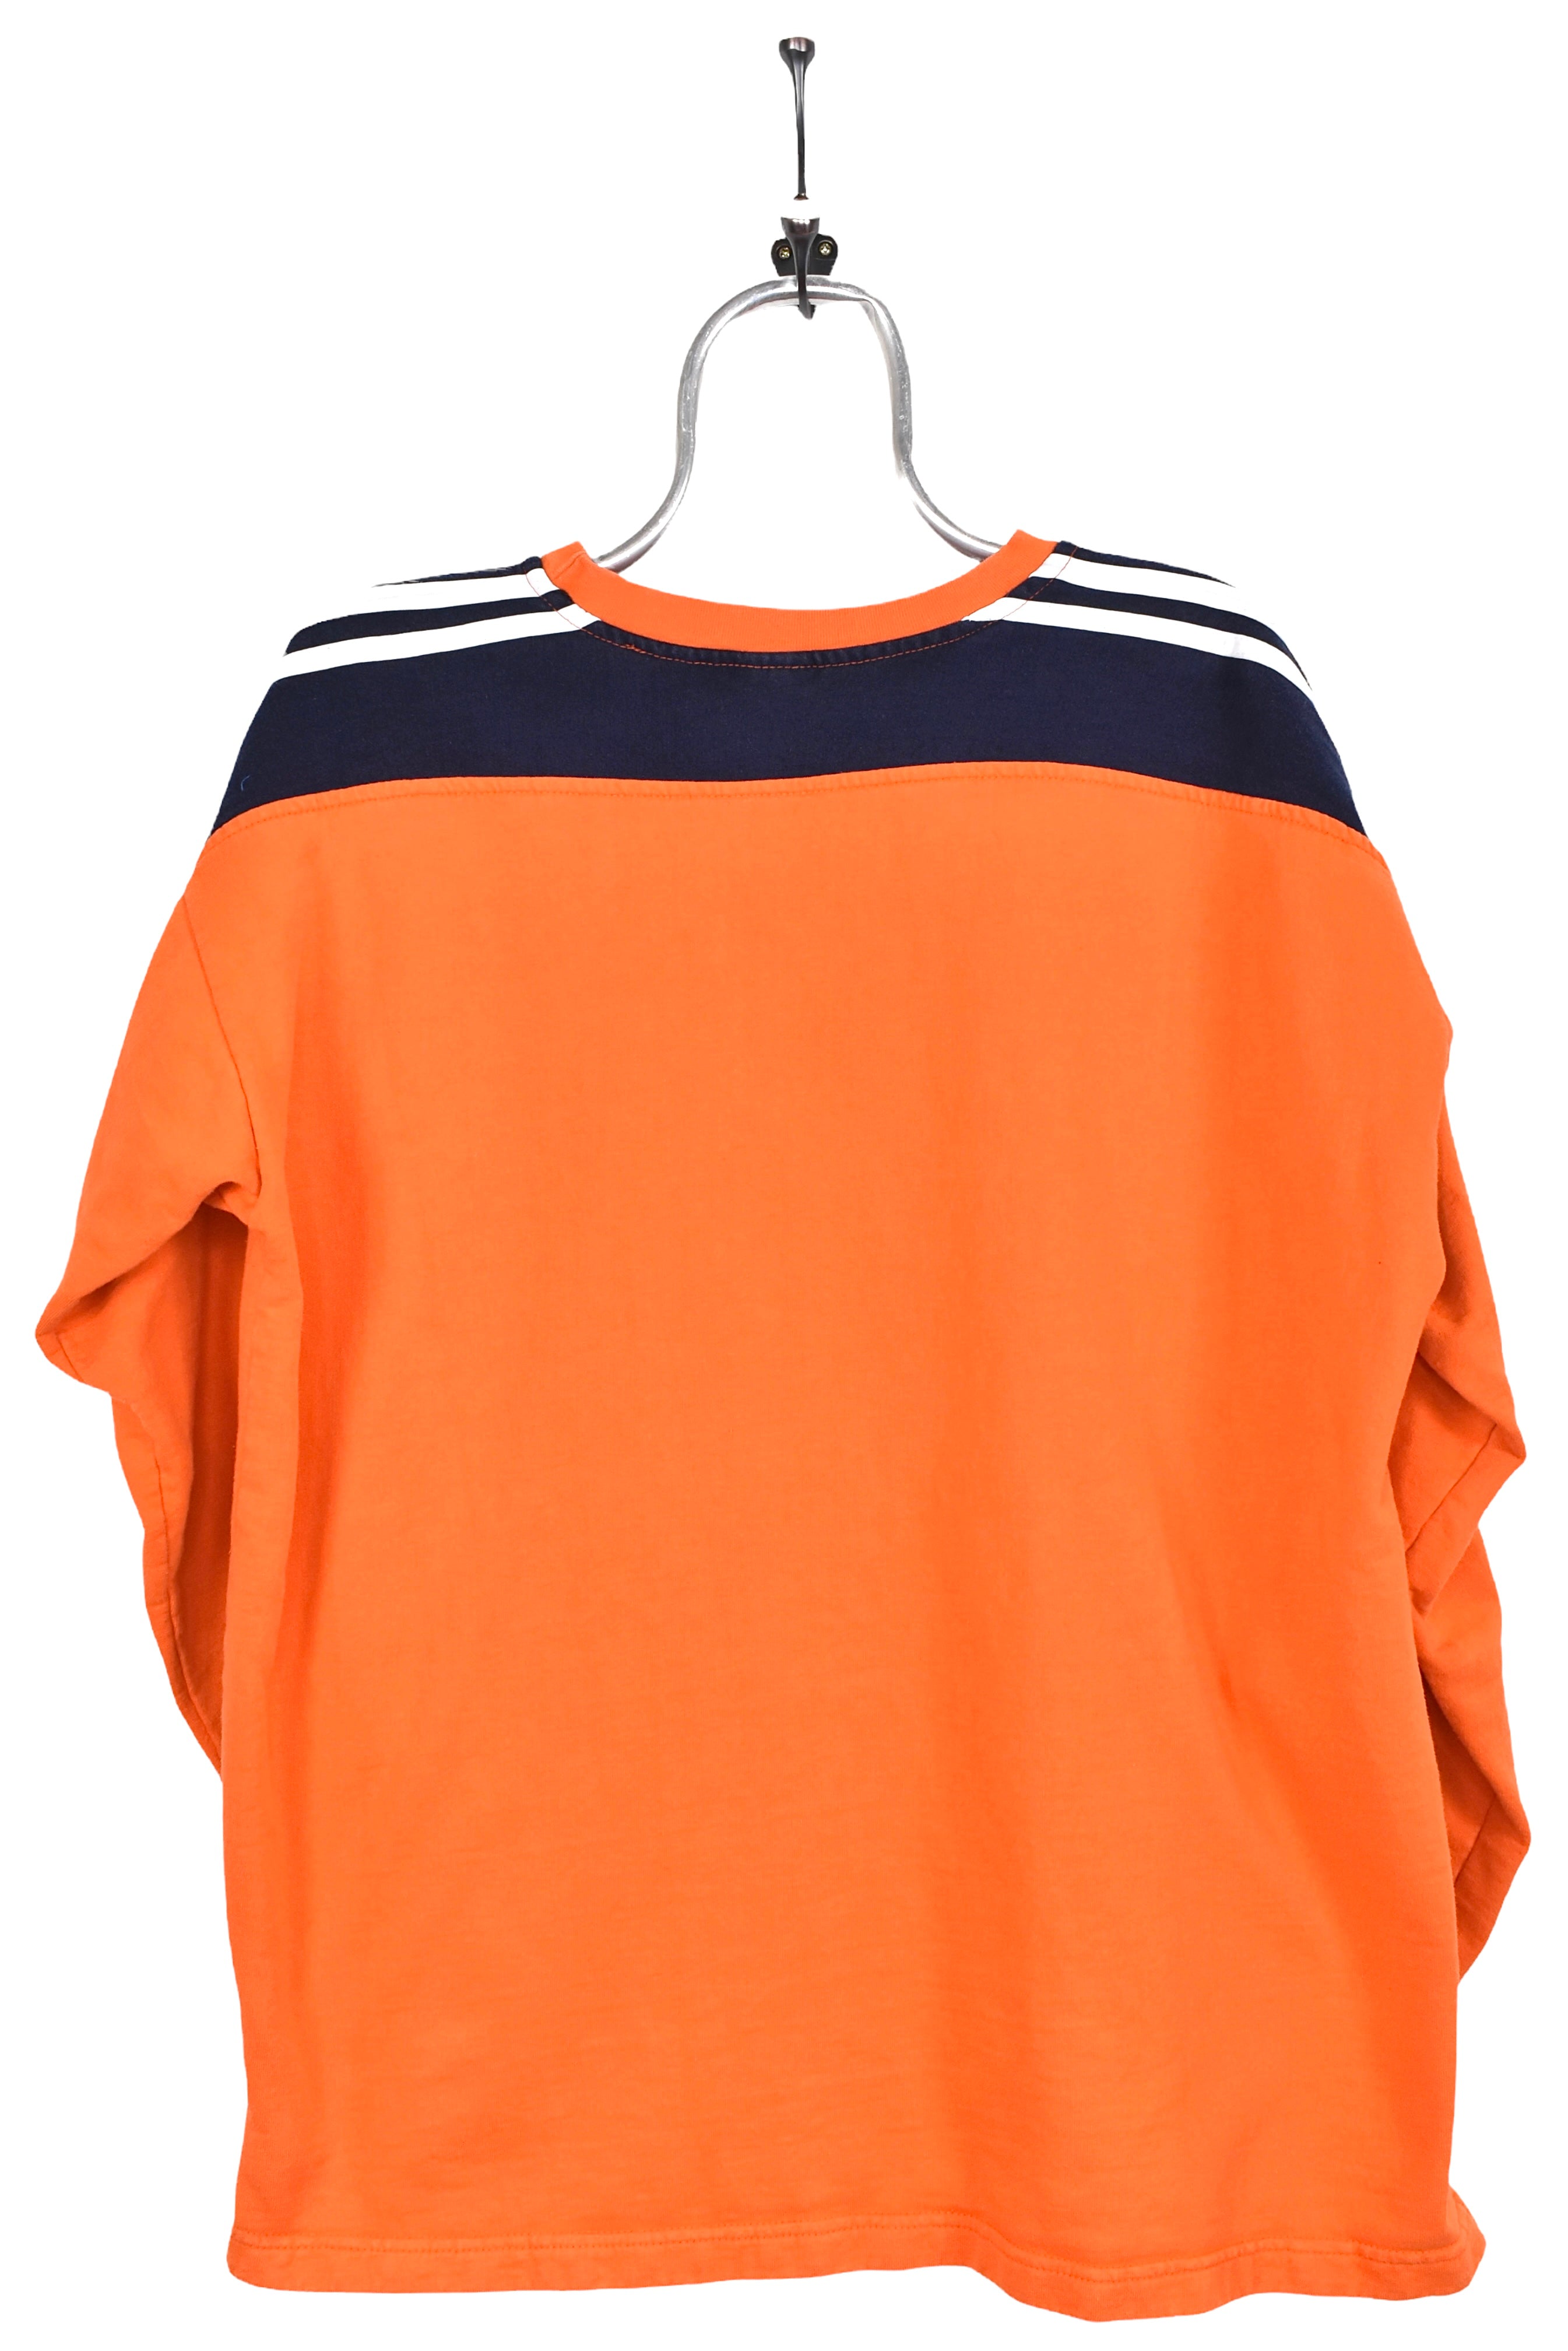 Vintage Adidas sweatshirt, orange embroidered crewneck - AU XL ADIDAS